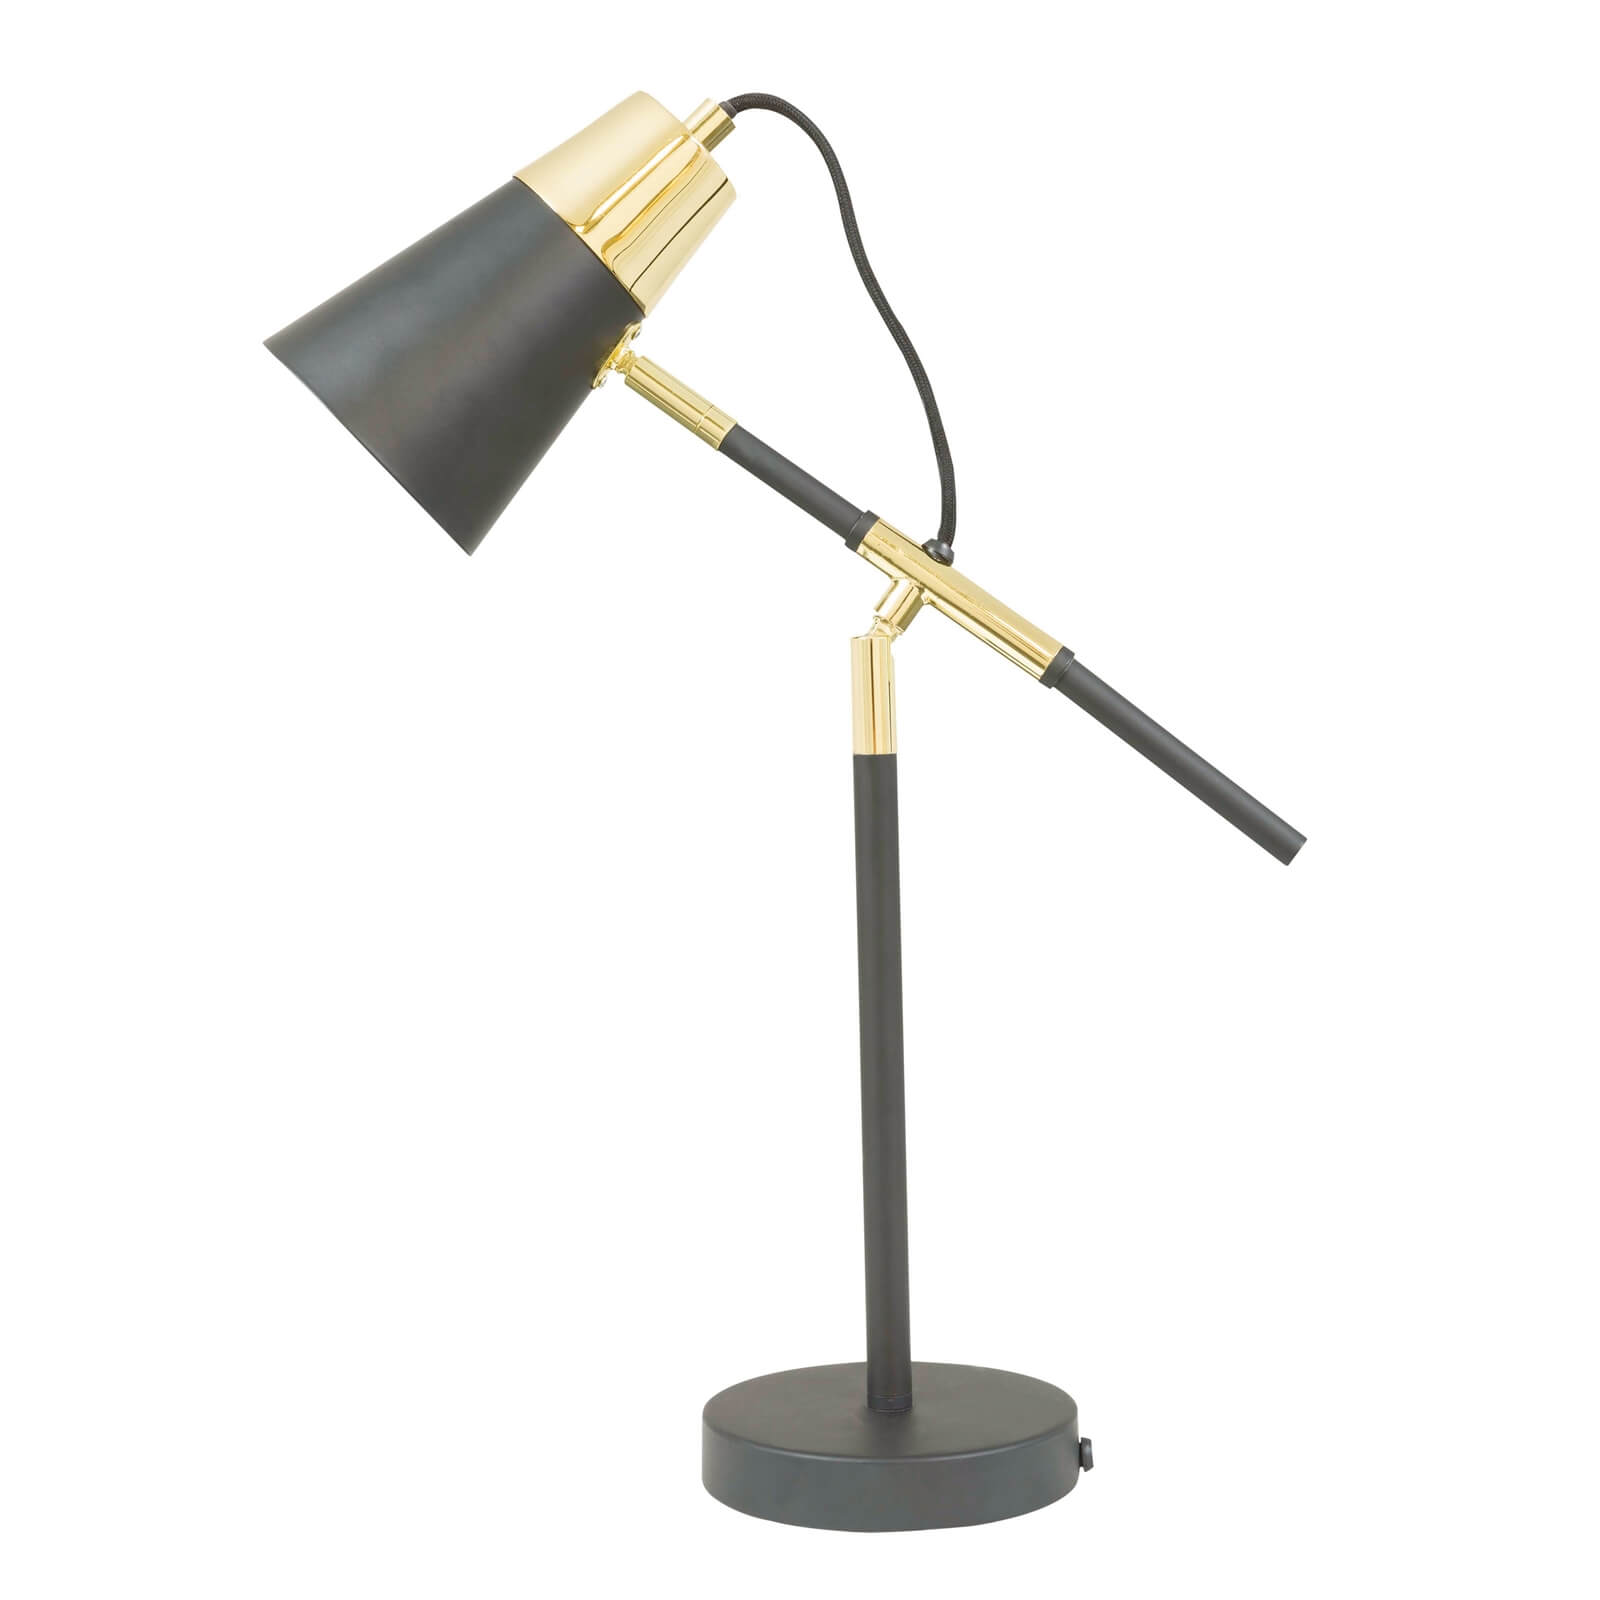 Harper Desk Lamp